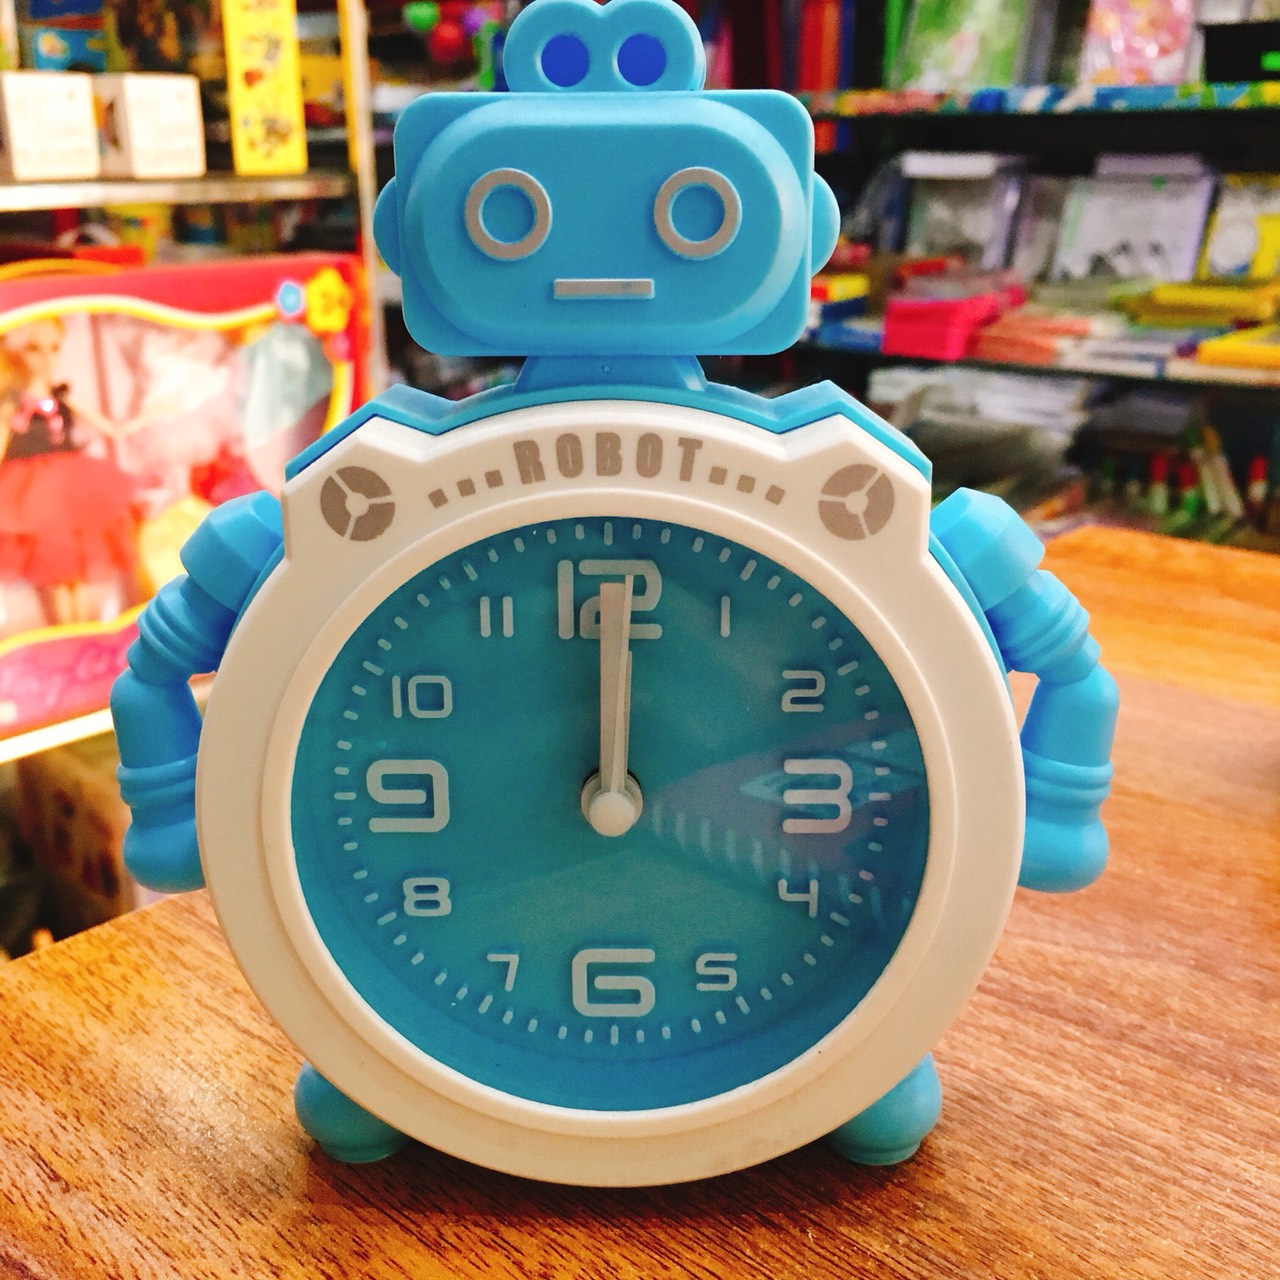 Đồng hồ báo thức hình robot